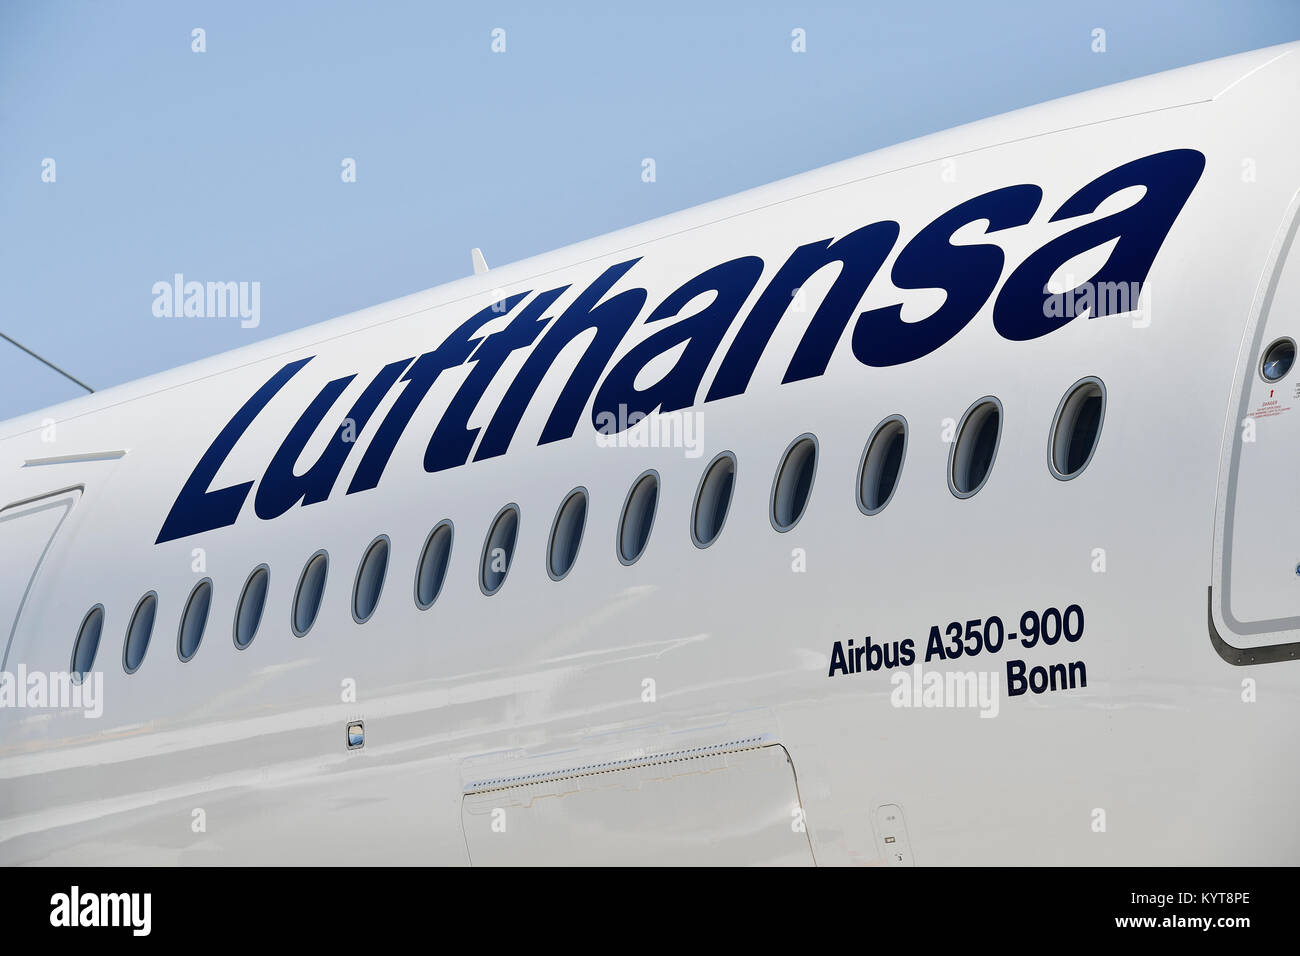 Dettagli, registrazione, Lettera, lettere, numeri, numeri d-AIXD, Bonn, bandiera, segno, Lufthansa Airbus A350-900, Aeroporto di Monaco di Baviera, Foto Stock